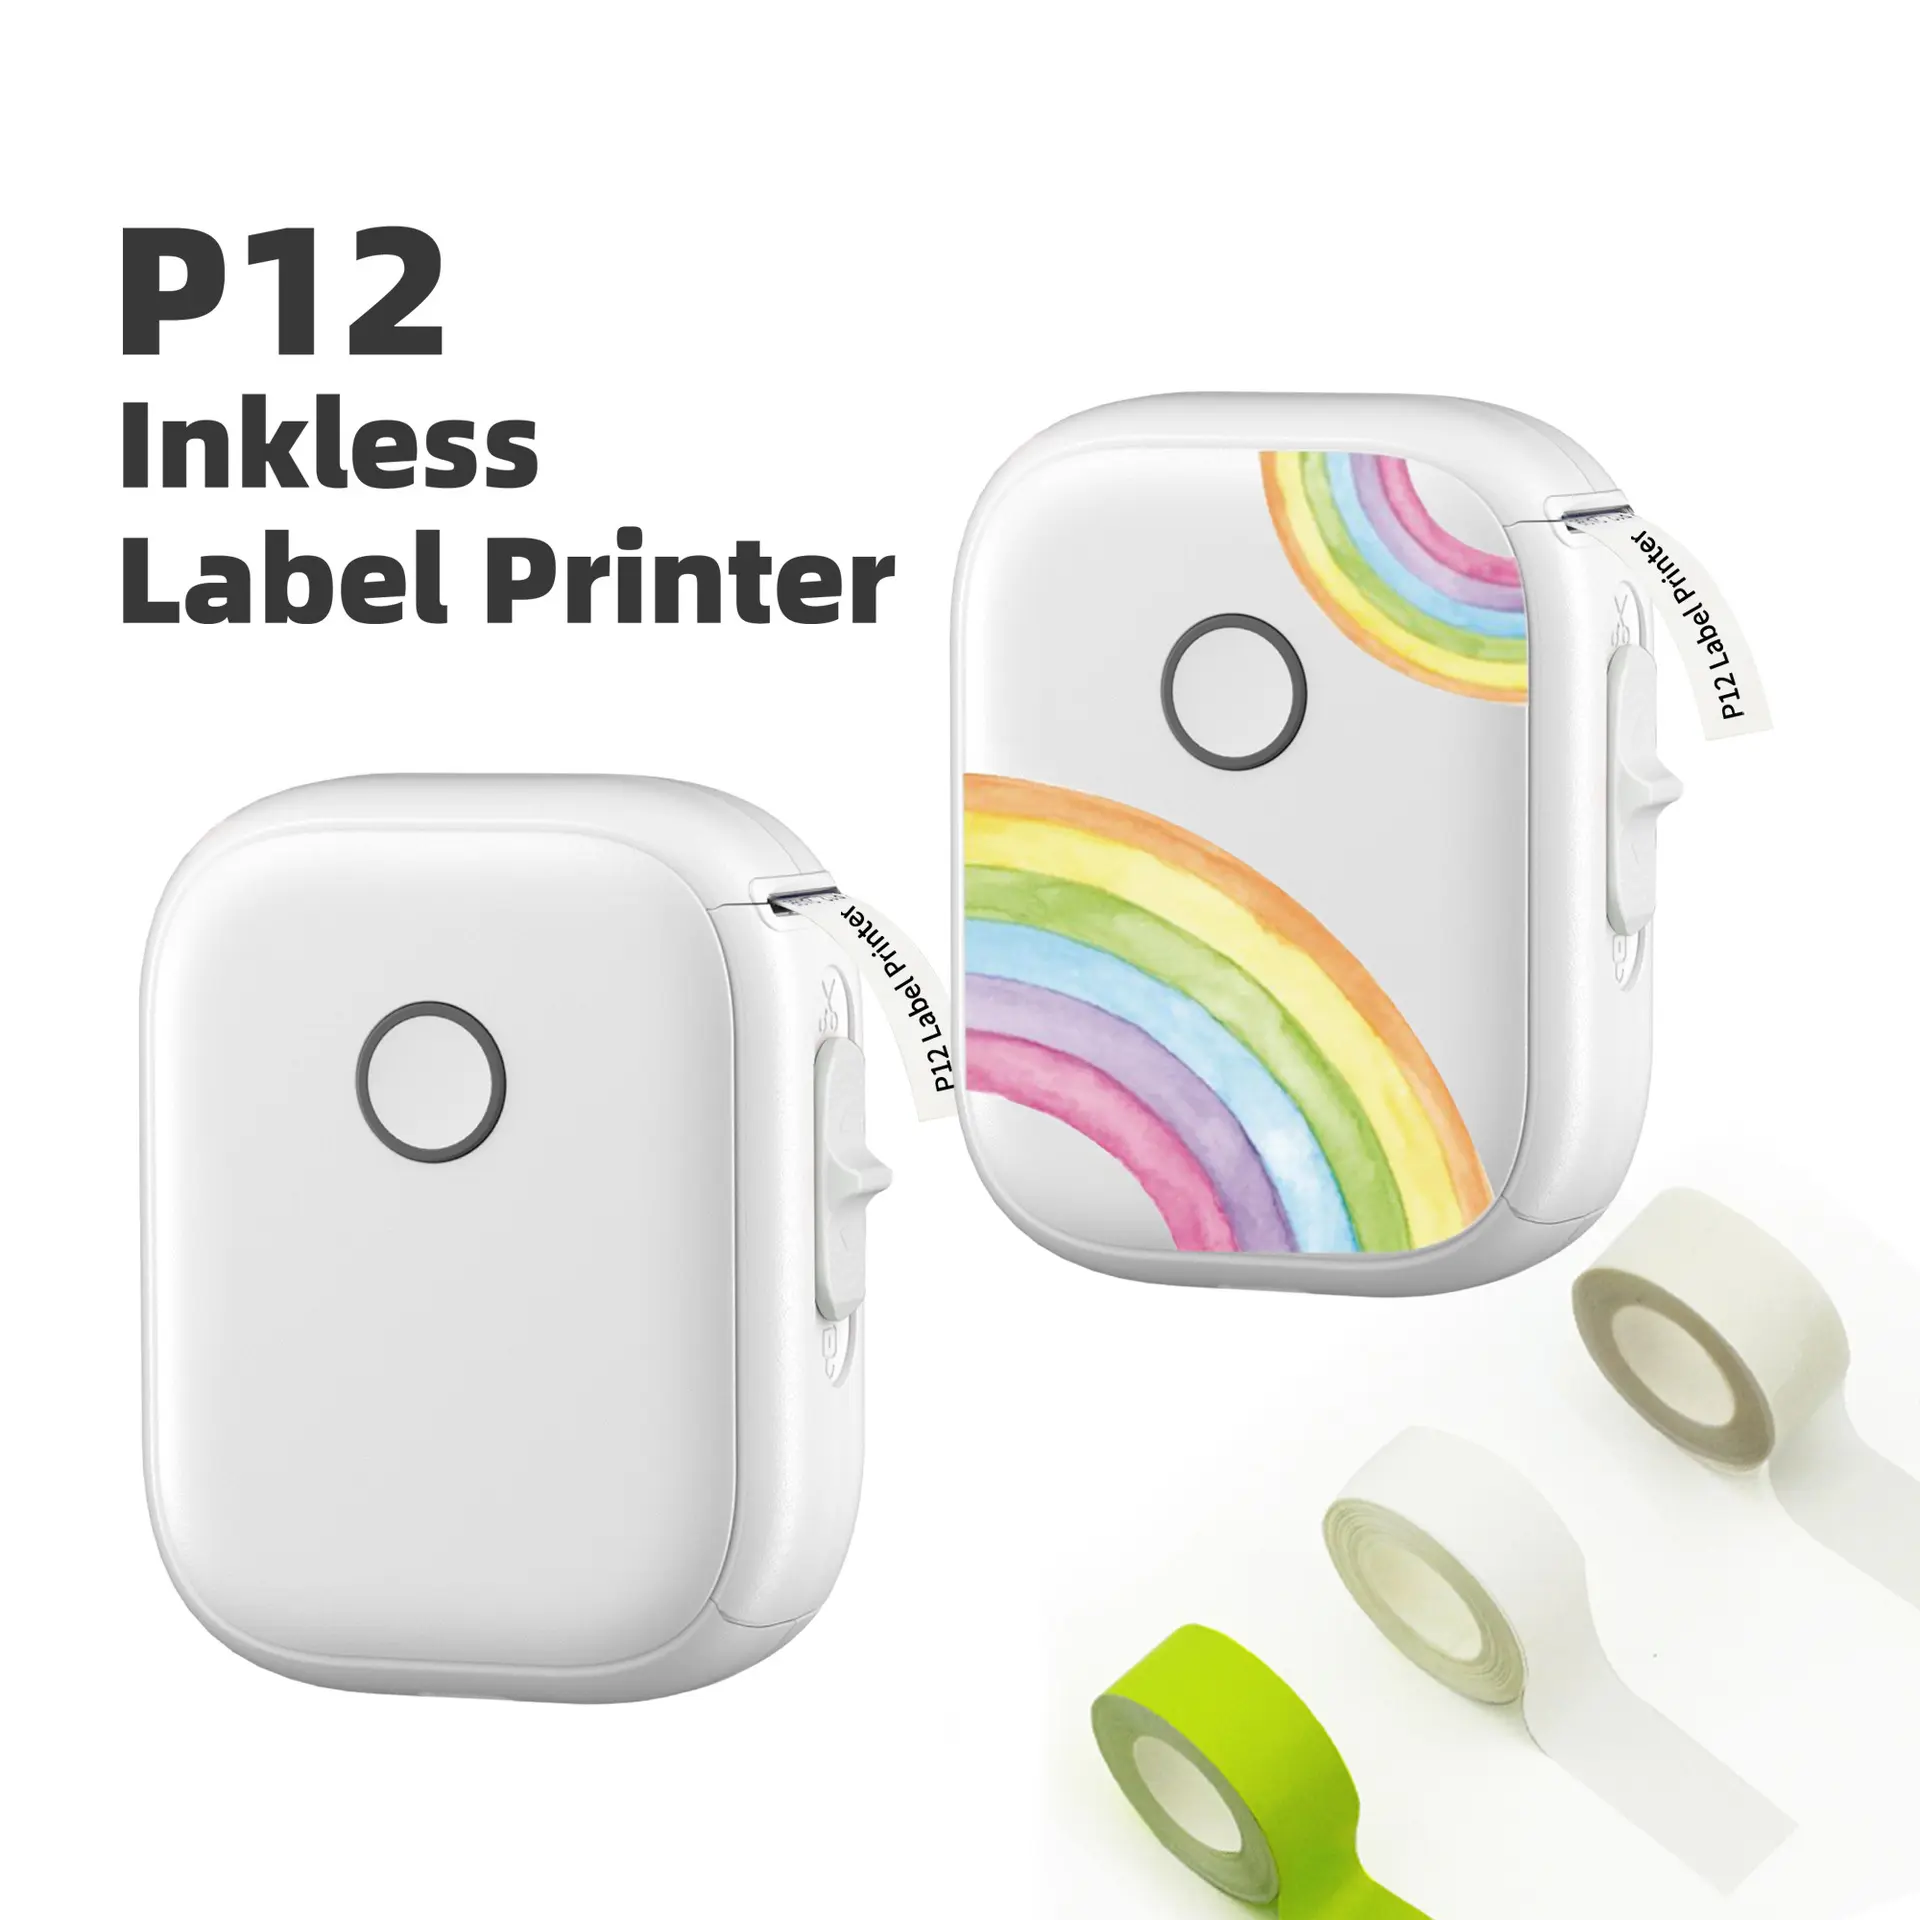 Mini impressora de etiquetas sem tinta P12, fabricante de código de barras térmico Marklife, mini etiqueta de transferência térmica colorida inteligente com conexão sem fio